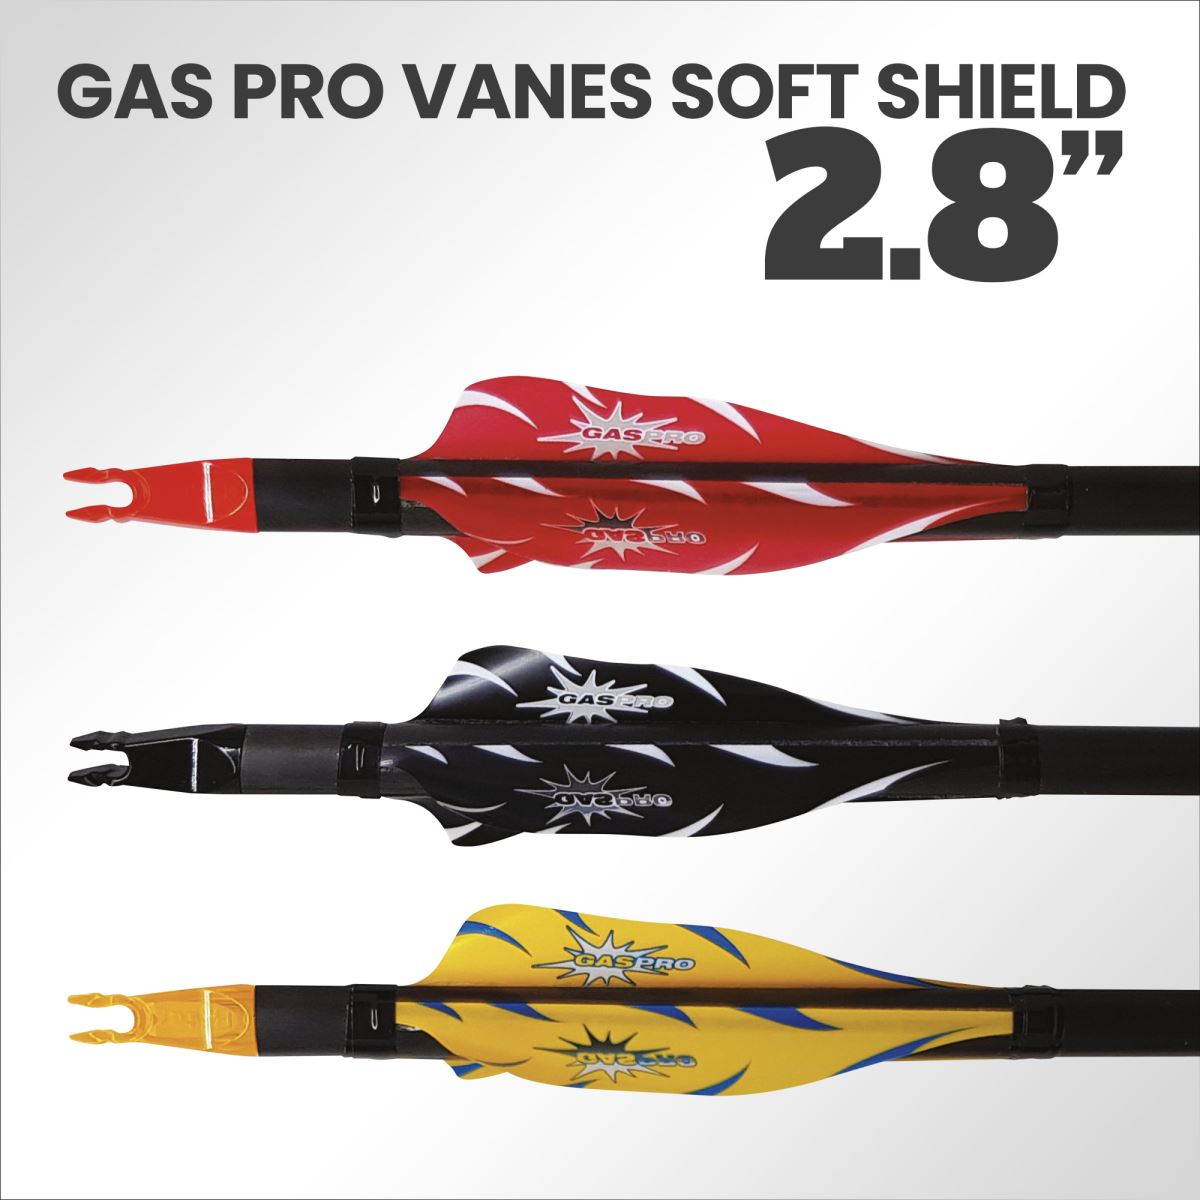 Scopri le Nuove Gas Pro 2.8" Spin Vanes